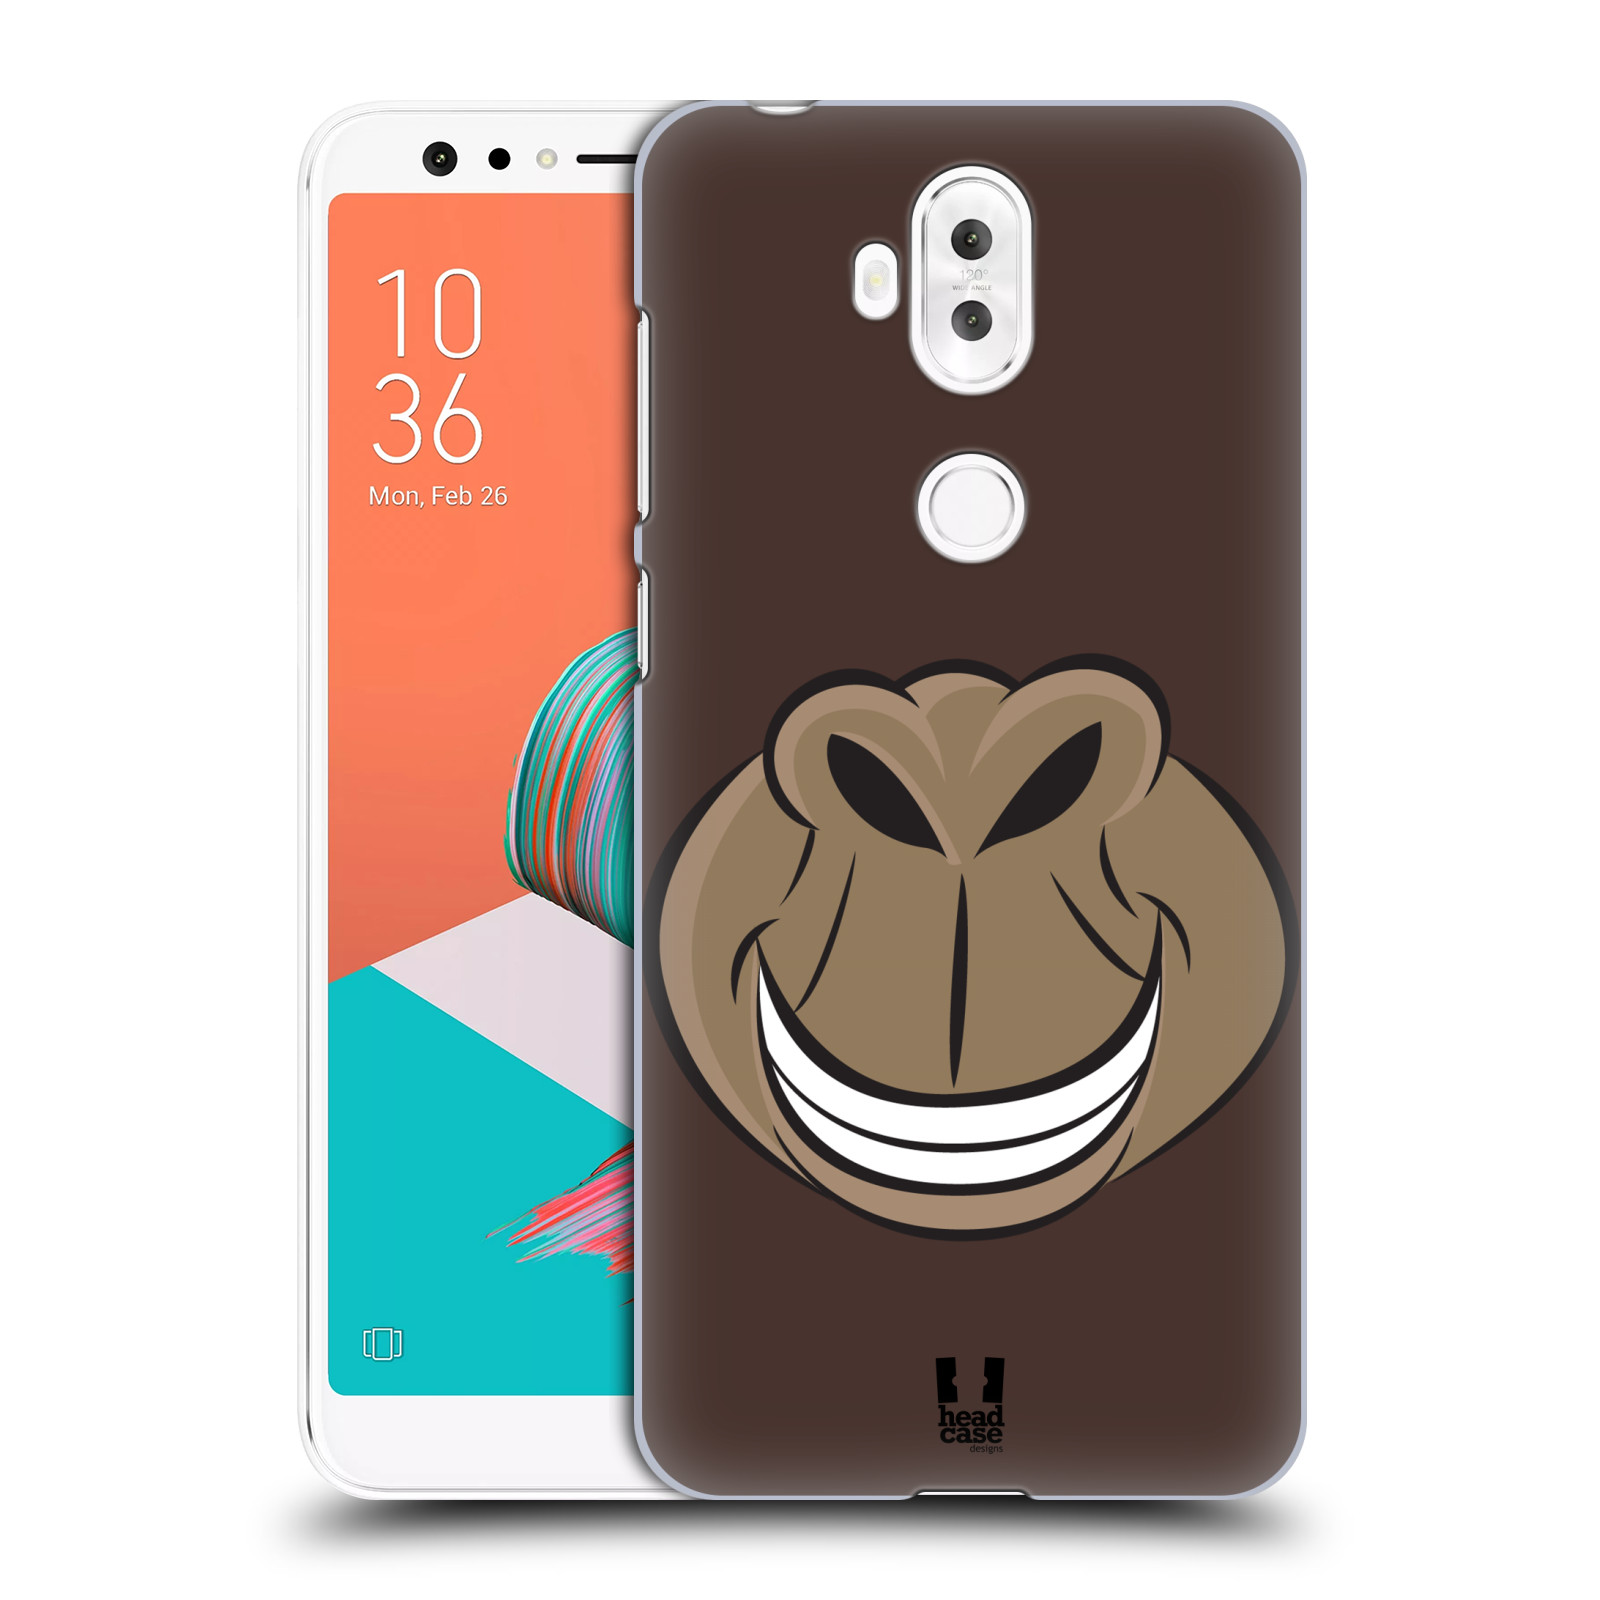 HEAD CASE plastový obal na mobil Asus Zenfone 5 LITE ZC600KL vzor Zvířecí úsměv opice hnědá